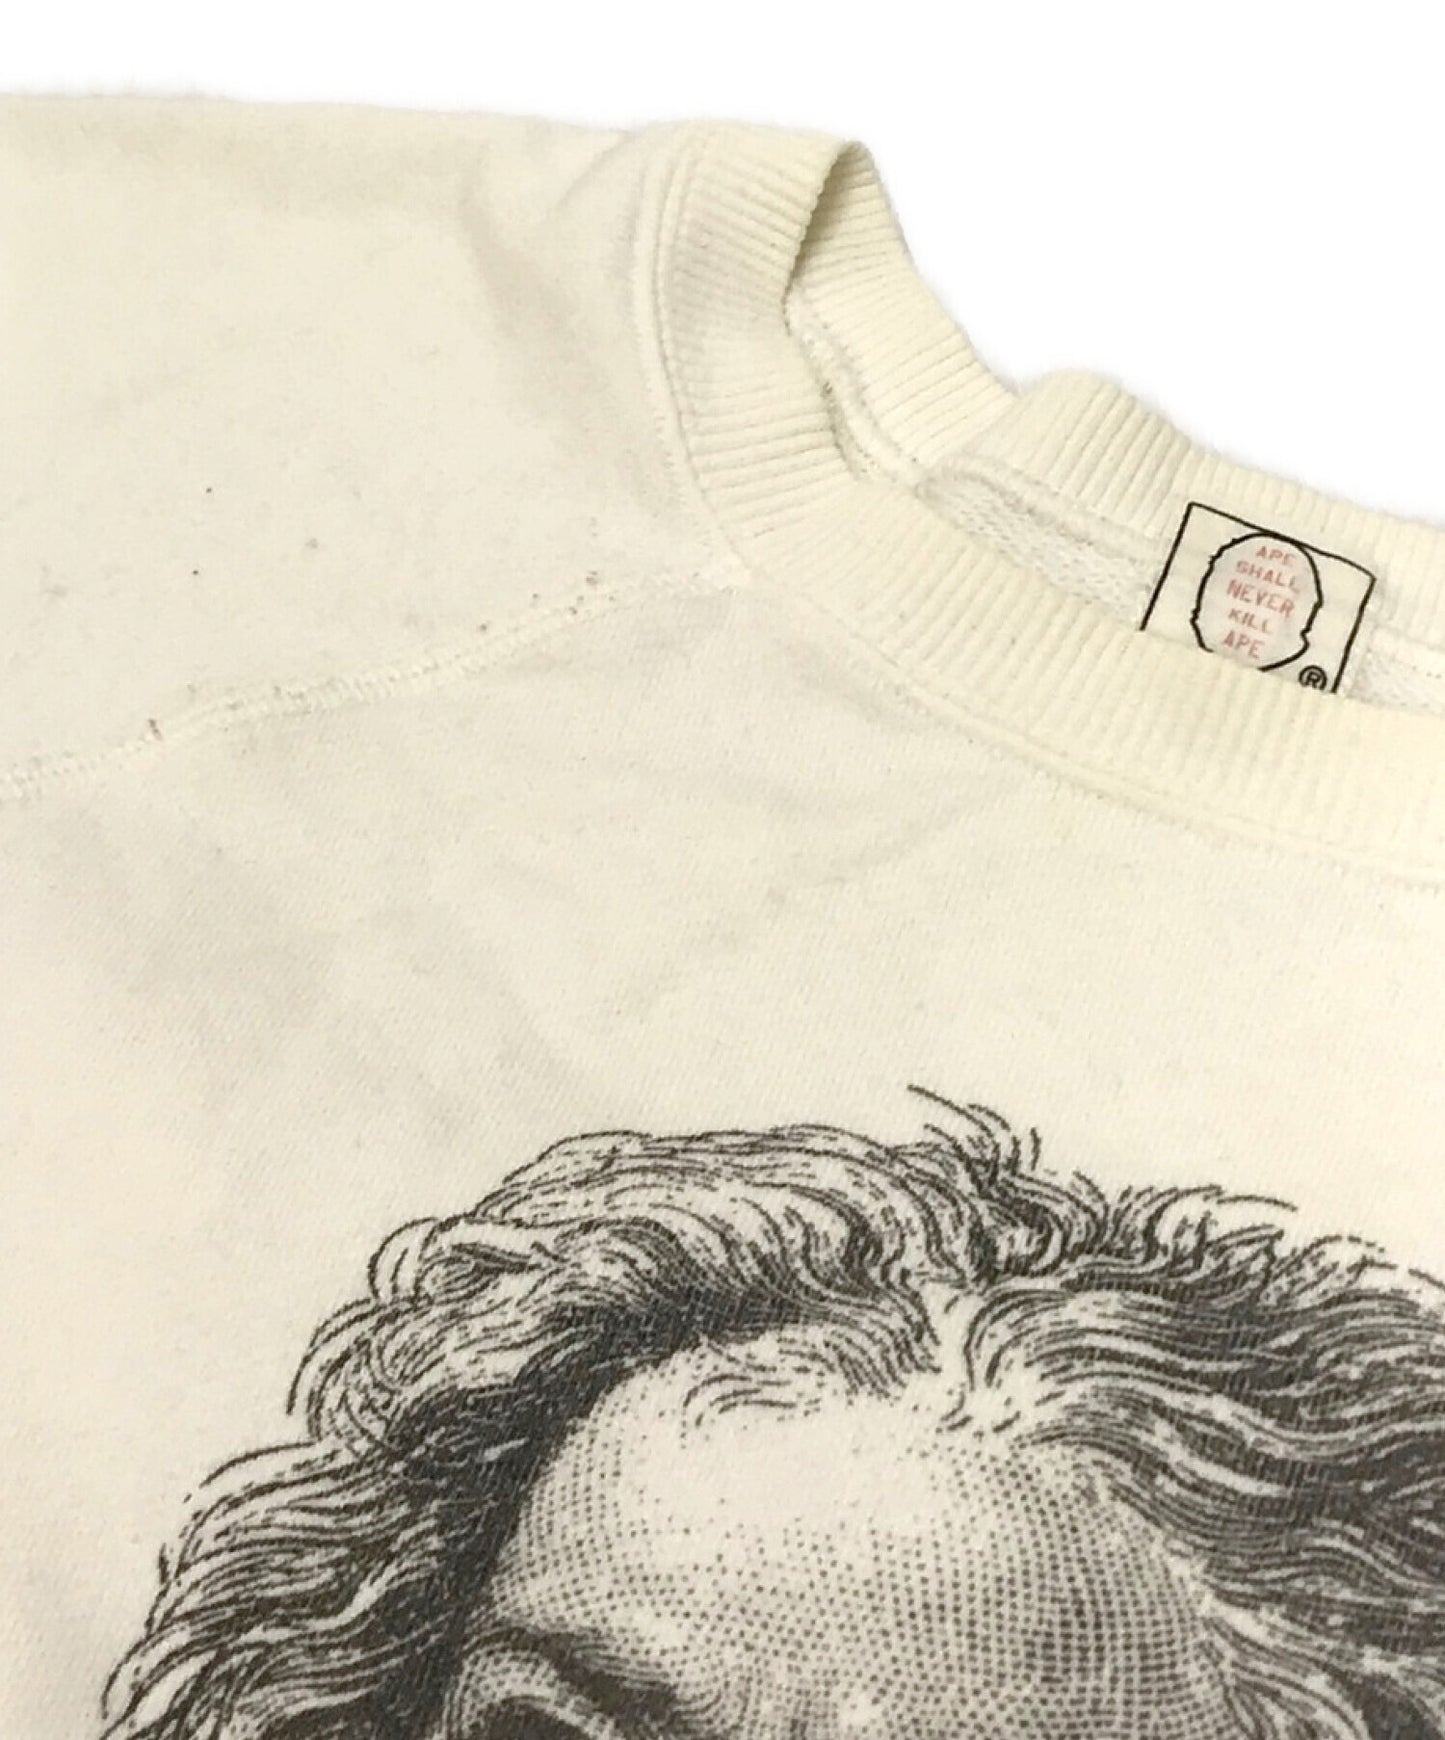 沐浴猿舊]印刷運動衫貝多芬船員脖子早期標籤永遠不會殺死猿